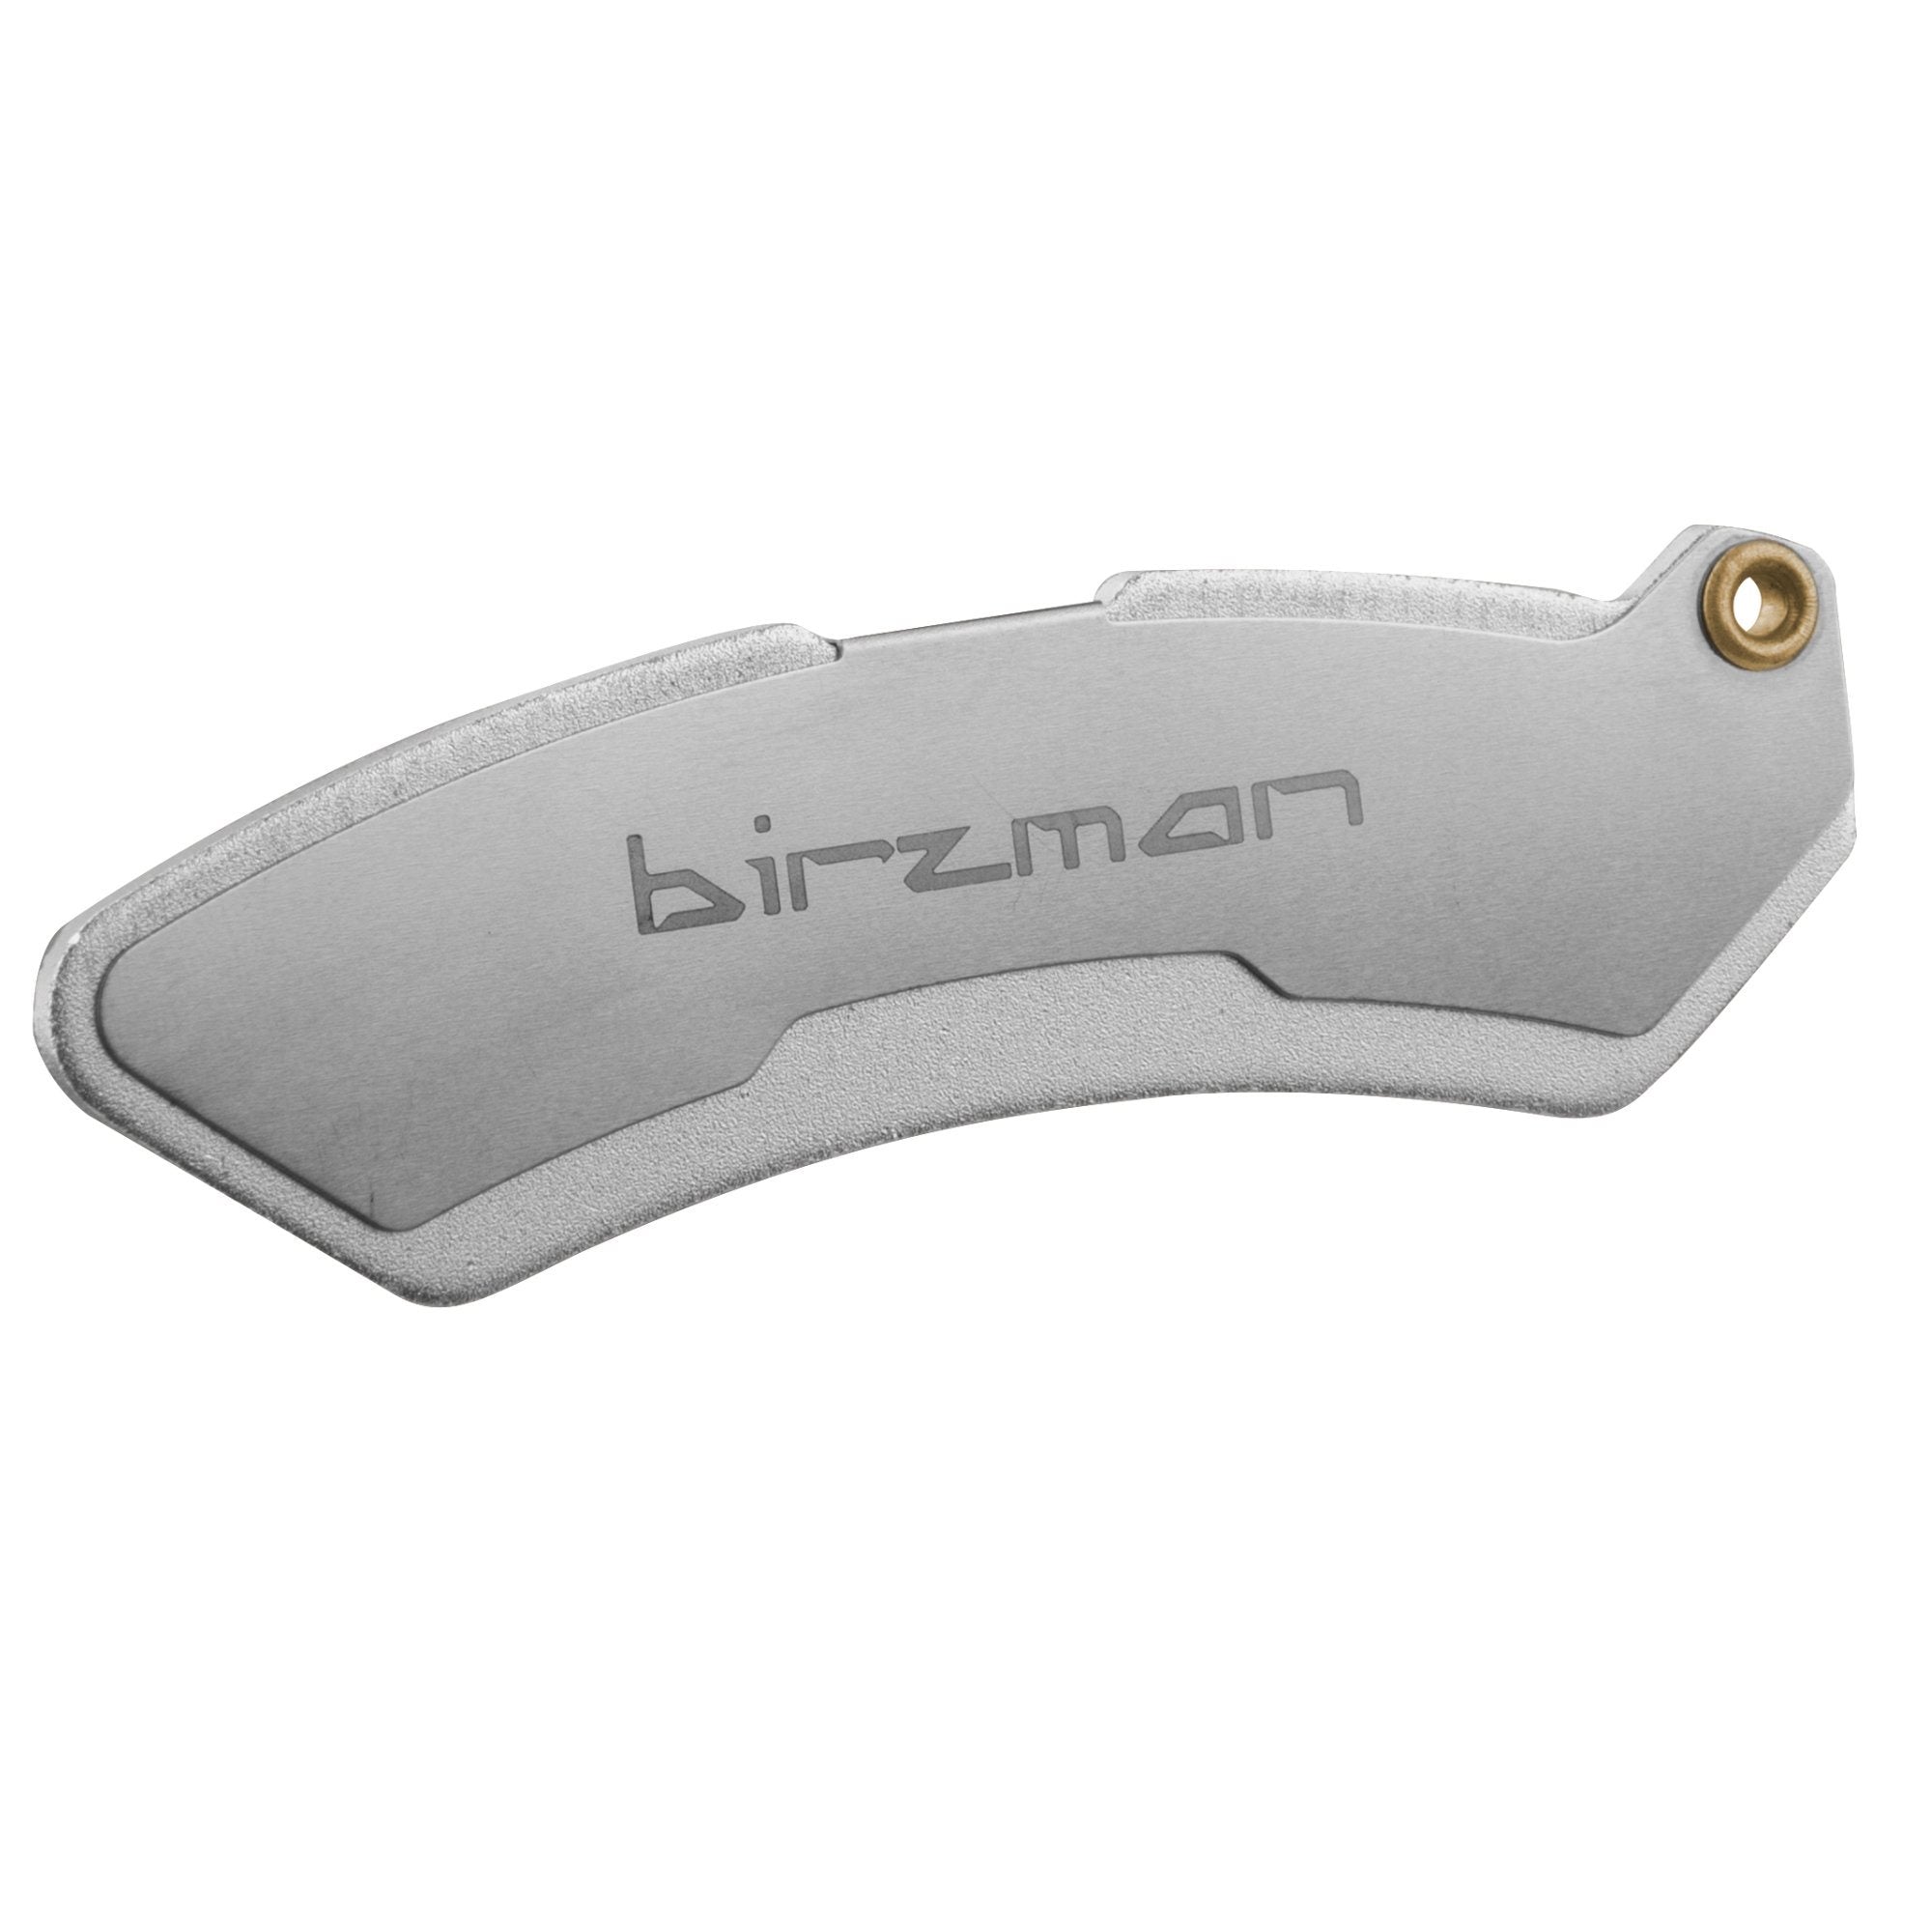 Birzman Razor Clam Bike Disc Brake Tool